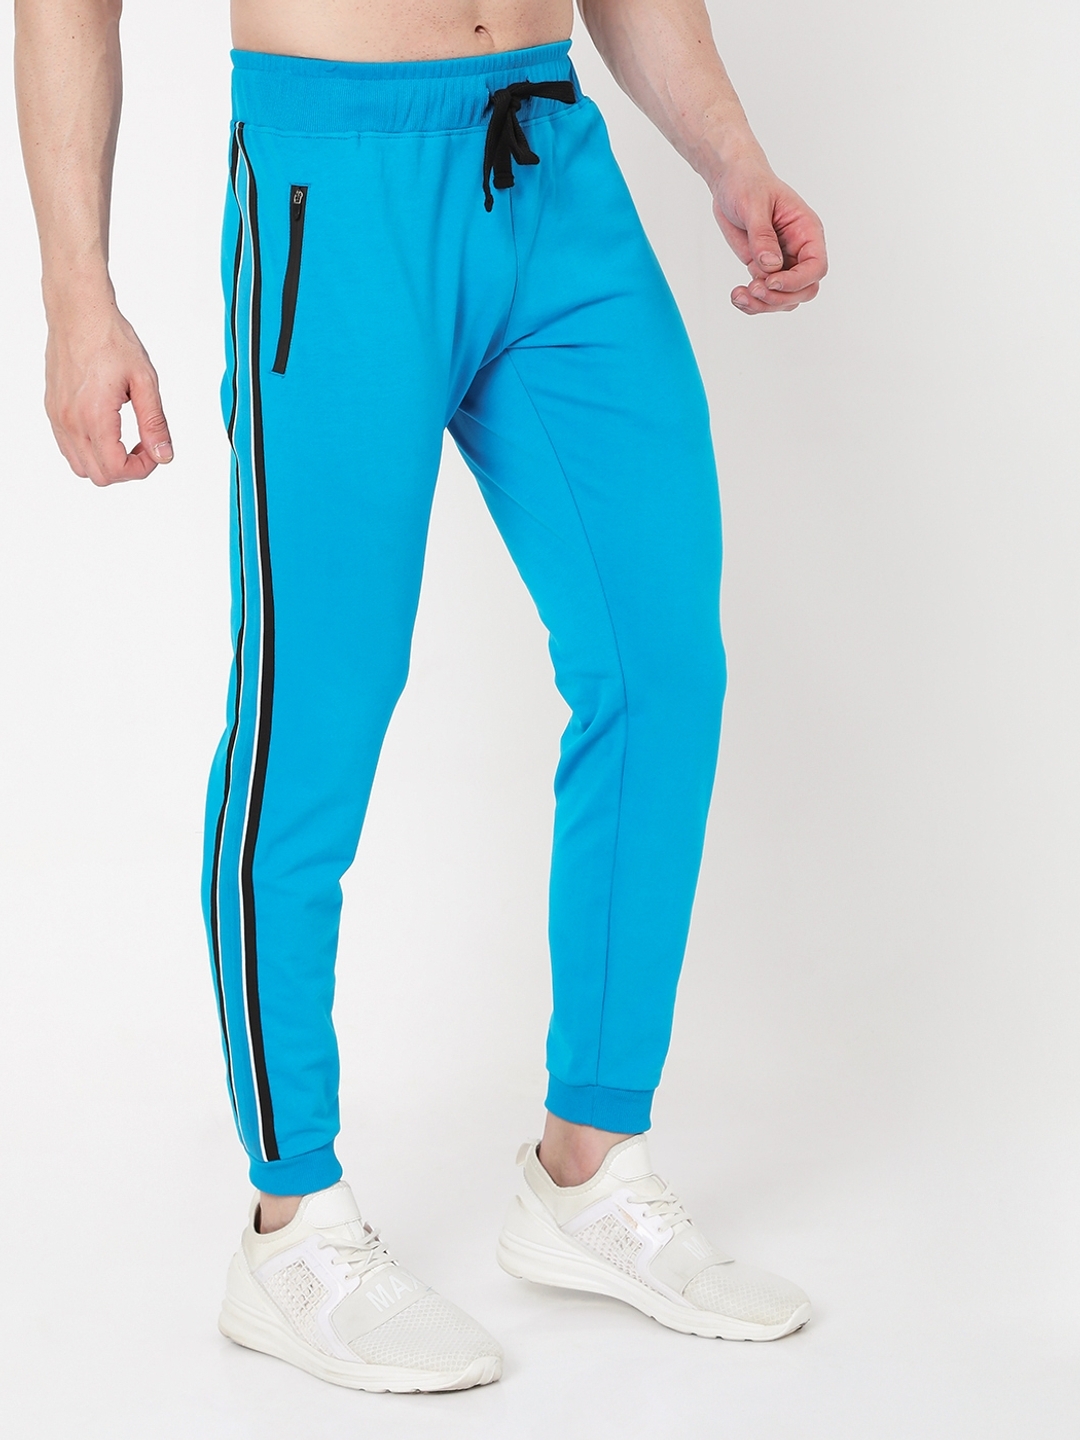 कंफर्ट के मामले में काफी बढ़िया हैं ये Slim Fit Track Pants, कैजुअल वेयर  में भी कर सकते हैं स्टाइल - buy these best slim fit track pants for men to  get